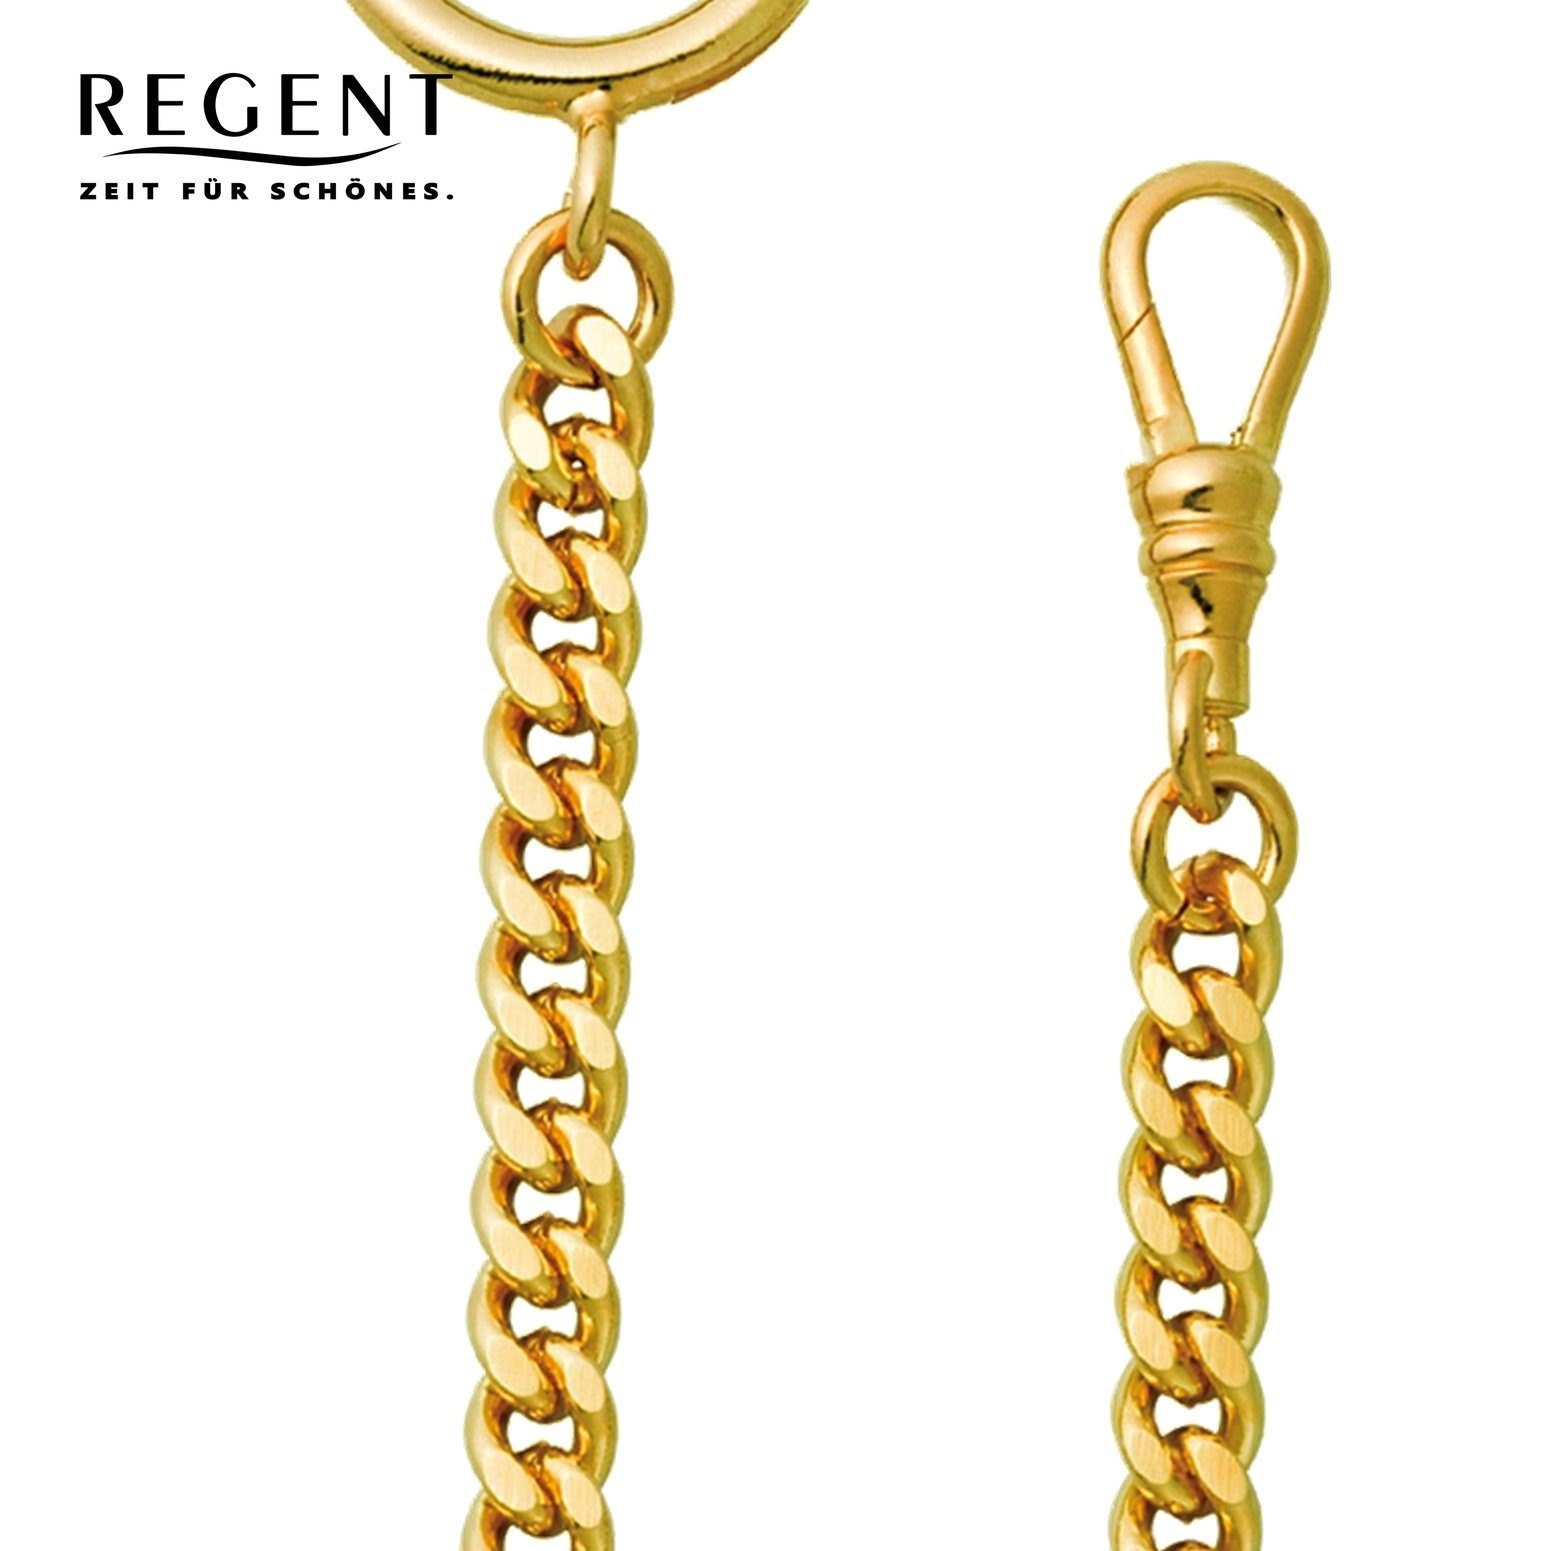 Herren Elegant Kettenuhr 5mm Taschenuhren-Kette Taschenuhrenkette, Regent Regent P-44,